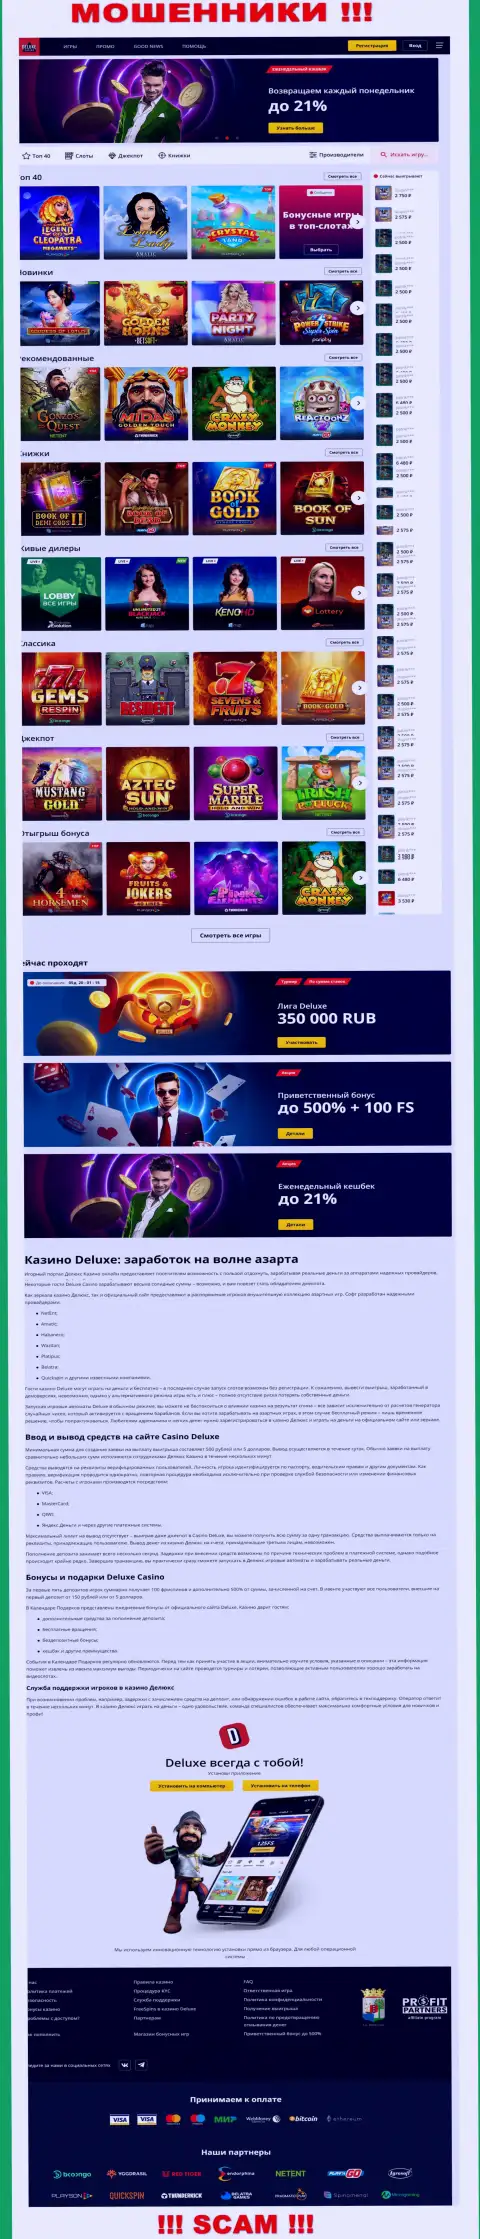 Официальная online-страница организации Deluxe Casino